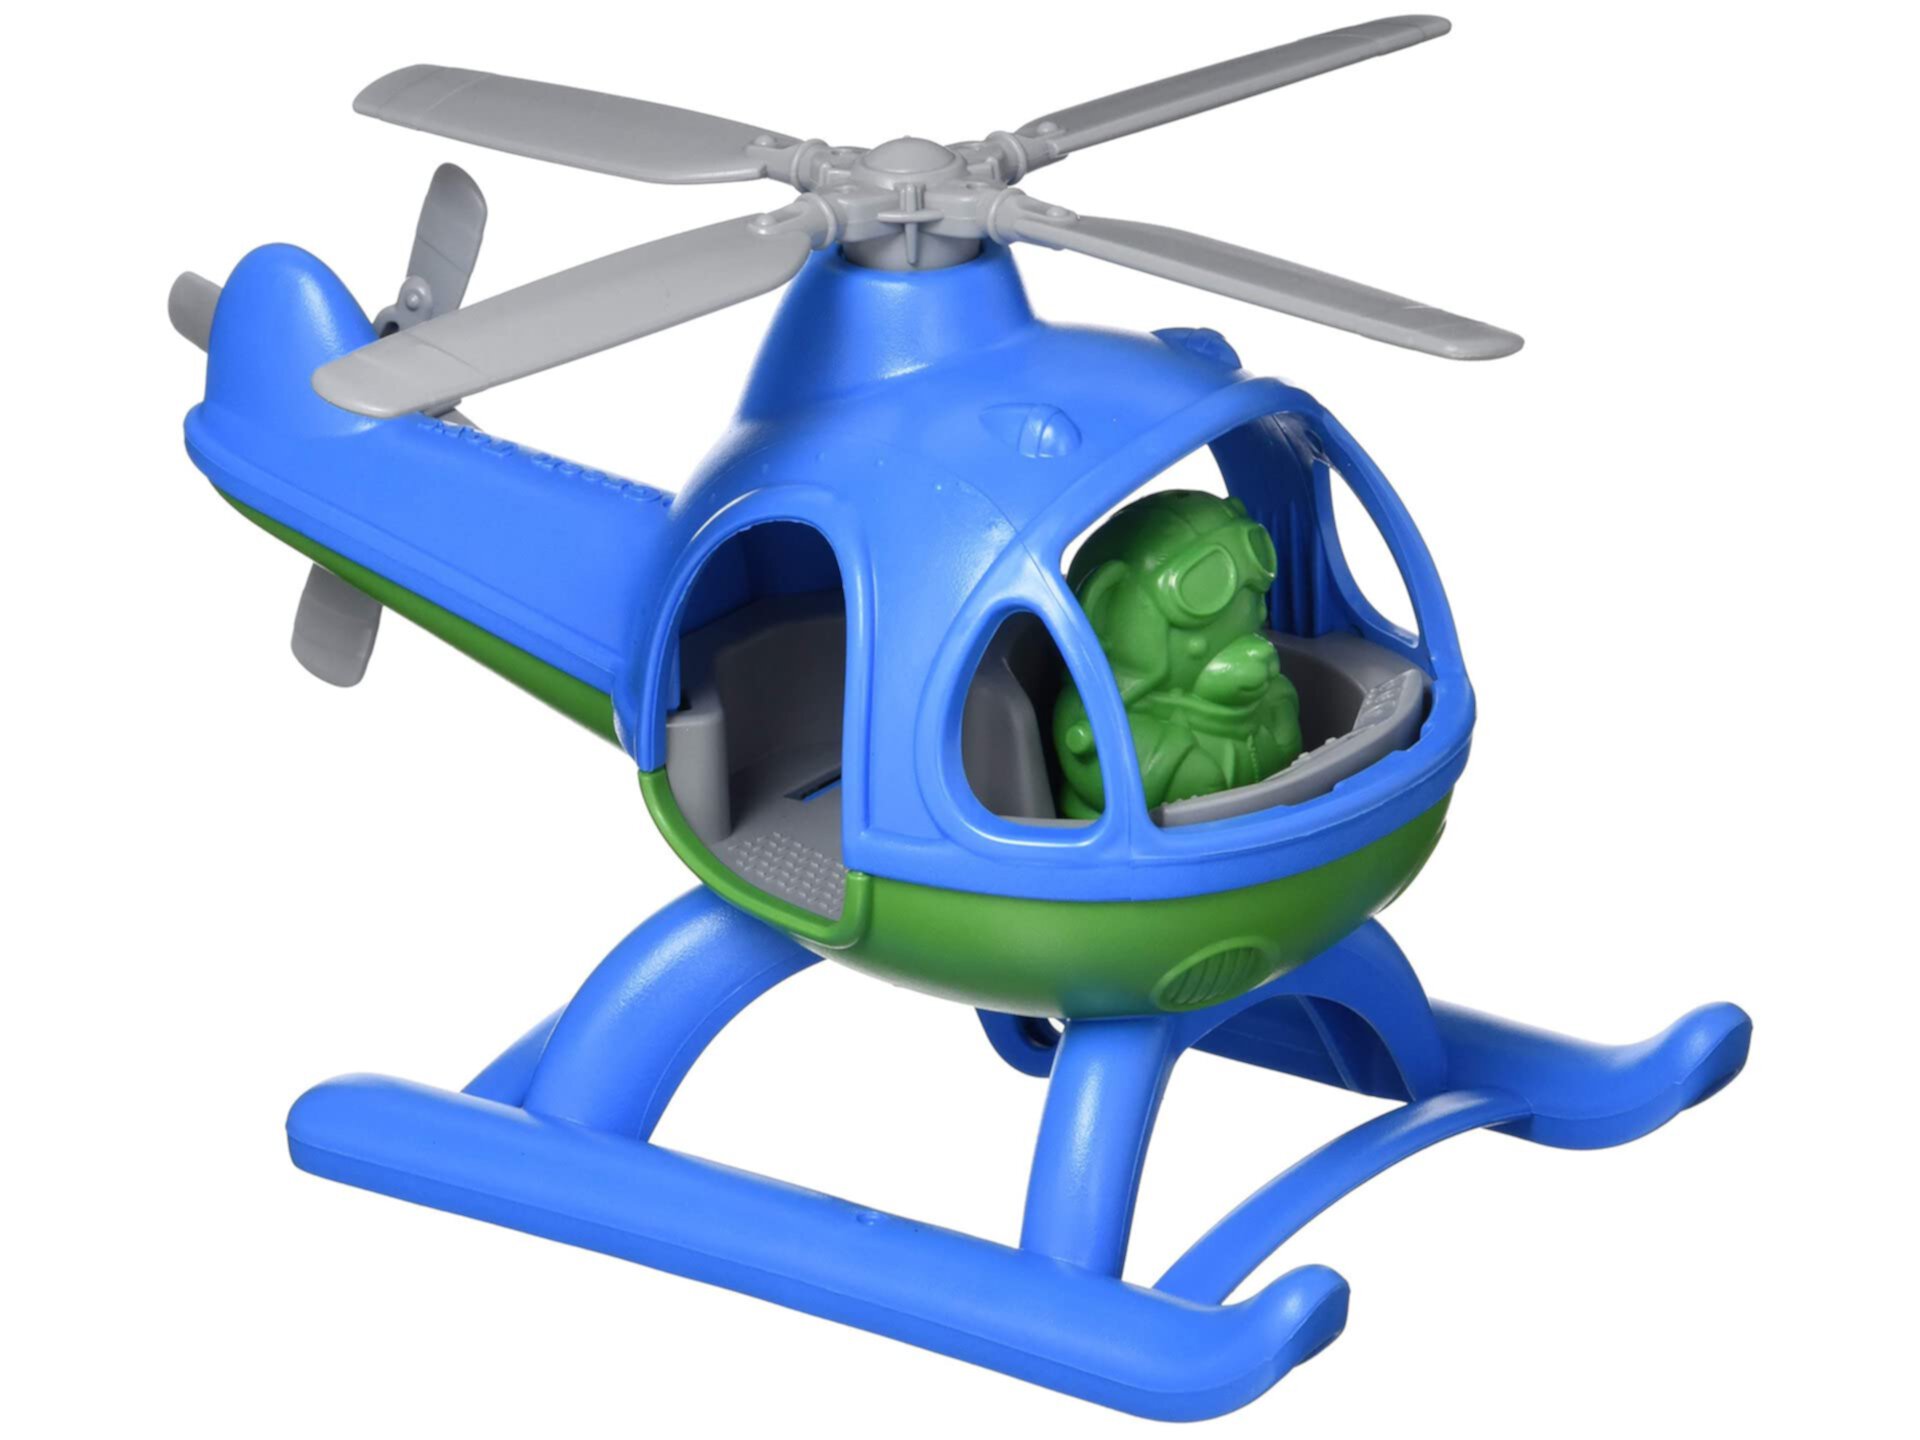 Вертолет Green Toys, Синий / Зеленый CB - Притворная игра, Двигательные навыки, Детский летающий игрушечный автомобиль. Не содержит BPA, фталатов, ПВХ. Можно мыть в посудомоечной машине, переработанный пластик, сделано в США. Green Toys